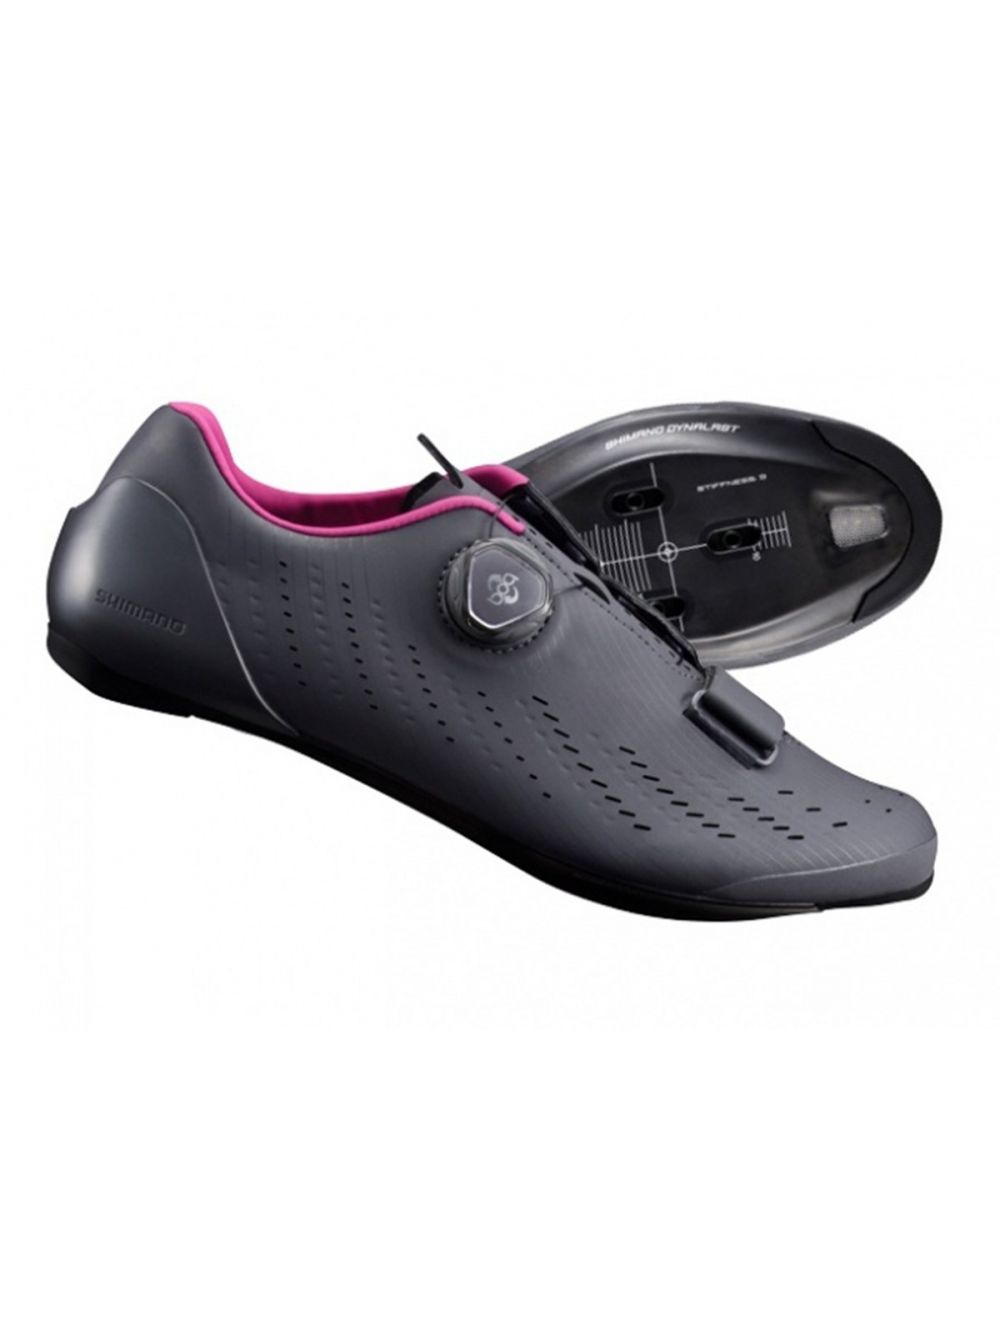 Shimano RP7 Cycling Shoe - Women's